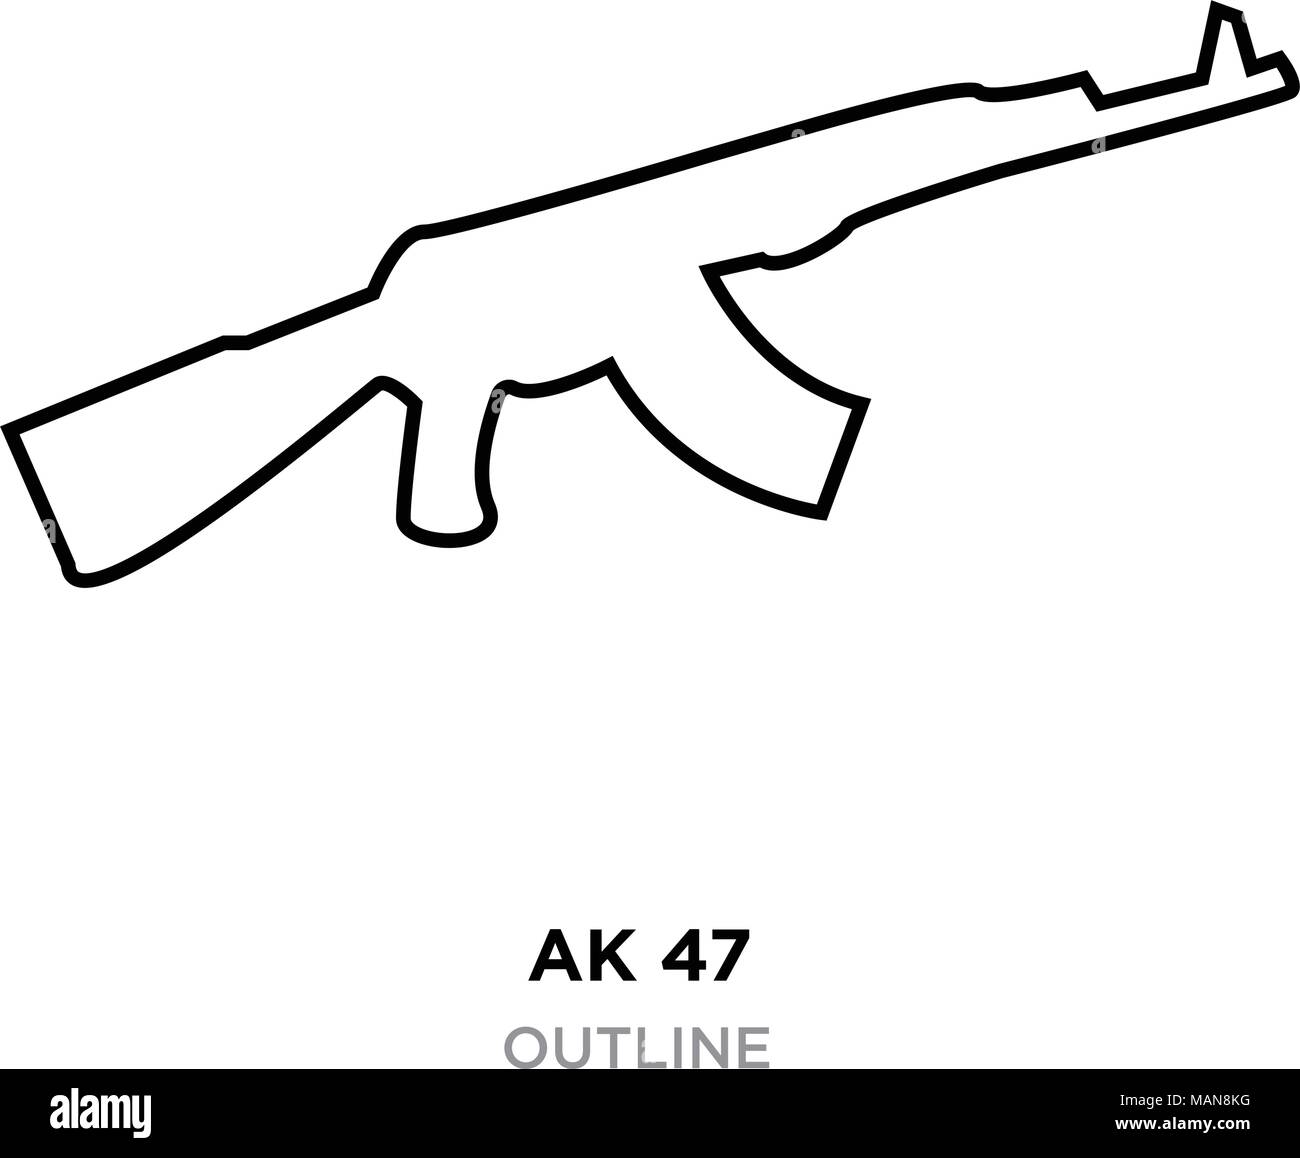 Bạn là một người yêu sự đơn giản nhưng vẫn tôn lên tiêu chuẩn chất lượng? Rồi thì bạn nhất định phải xem hình ảnh về AK-47 trên nền đen này. Chỉ bằng độ sắc nét và tinh tế, bức ảnh sẽ đủ mạnh để khiến bạn muốn sở hữu một khẩu súng AK-47 đầy uy lực như vậy.